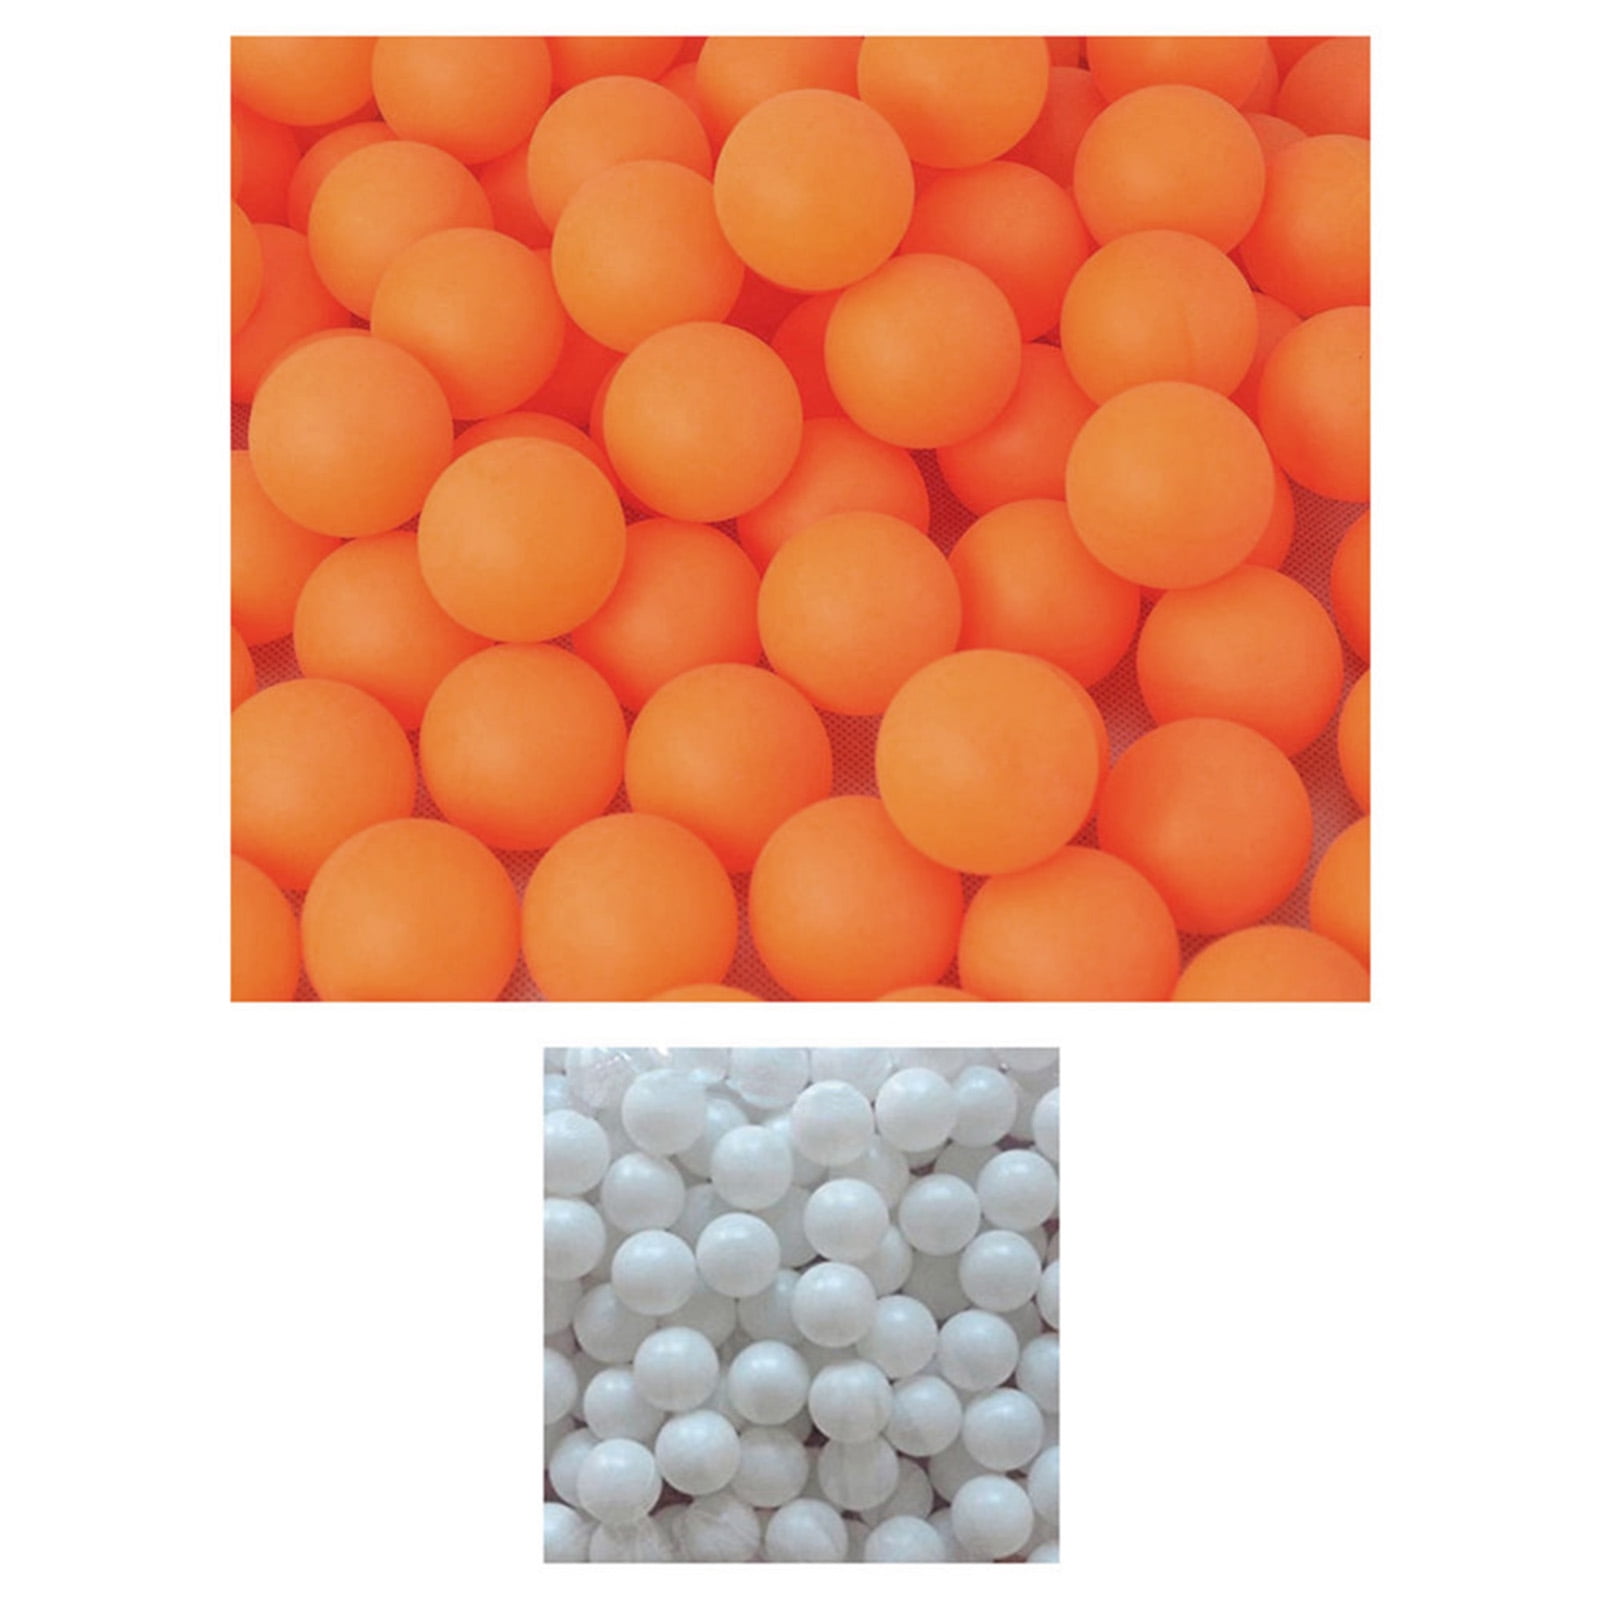 20/50/150 Pièces Balles De Ping-Pong Colorées, Balles De Tennis De Table  40mm, Balles De Ping-Pong Pour Jeu Ou Arts, Balles De Pong Pour Enfants